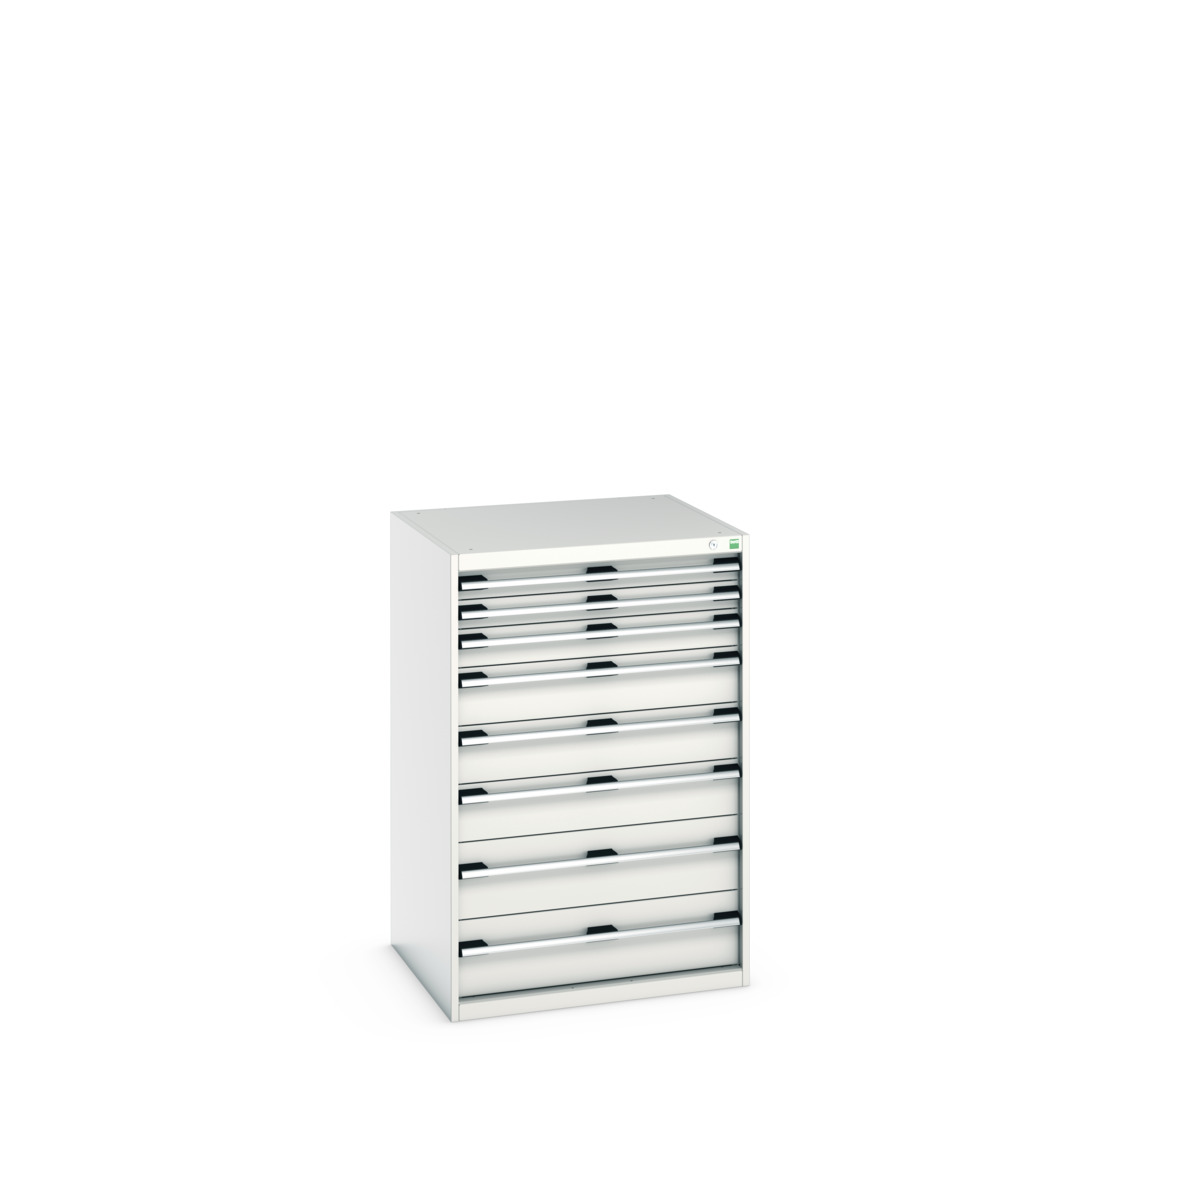 40028033.16V - cubio drawer cabinet